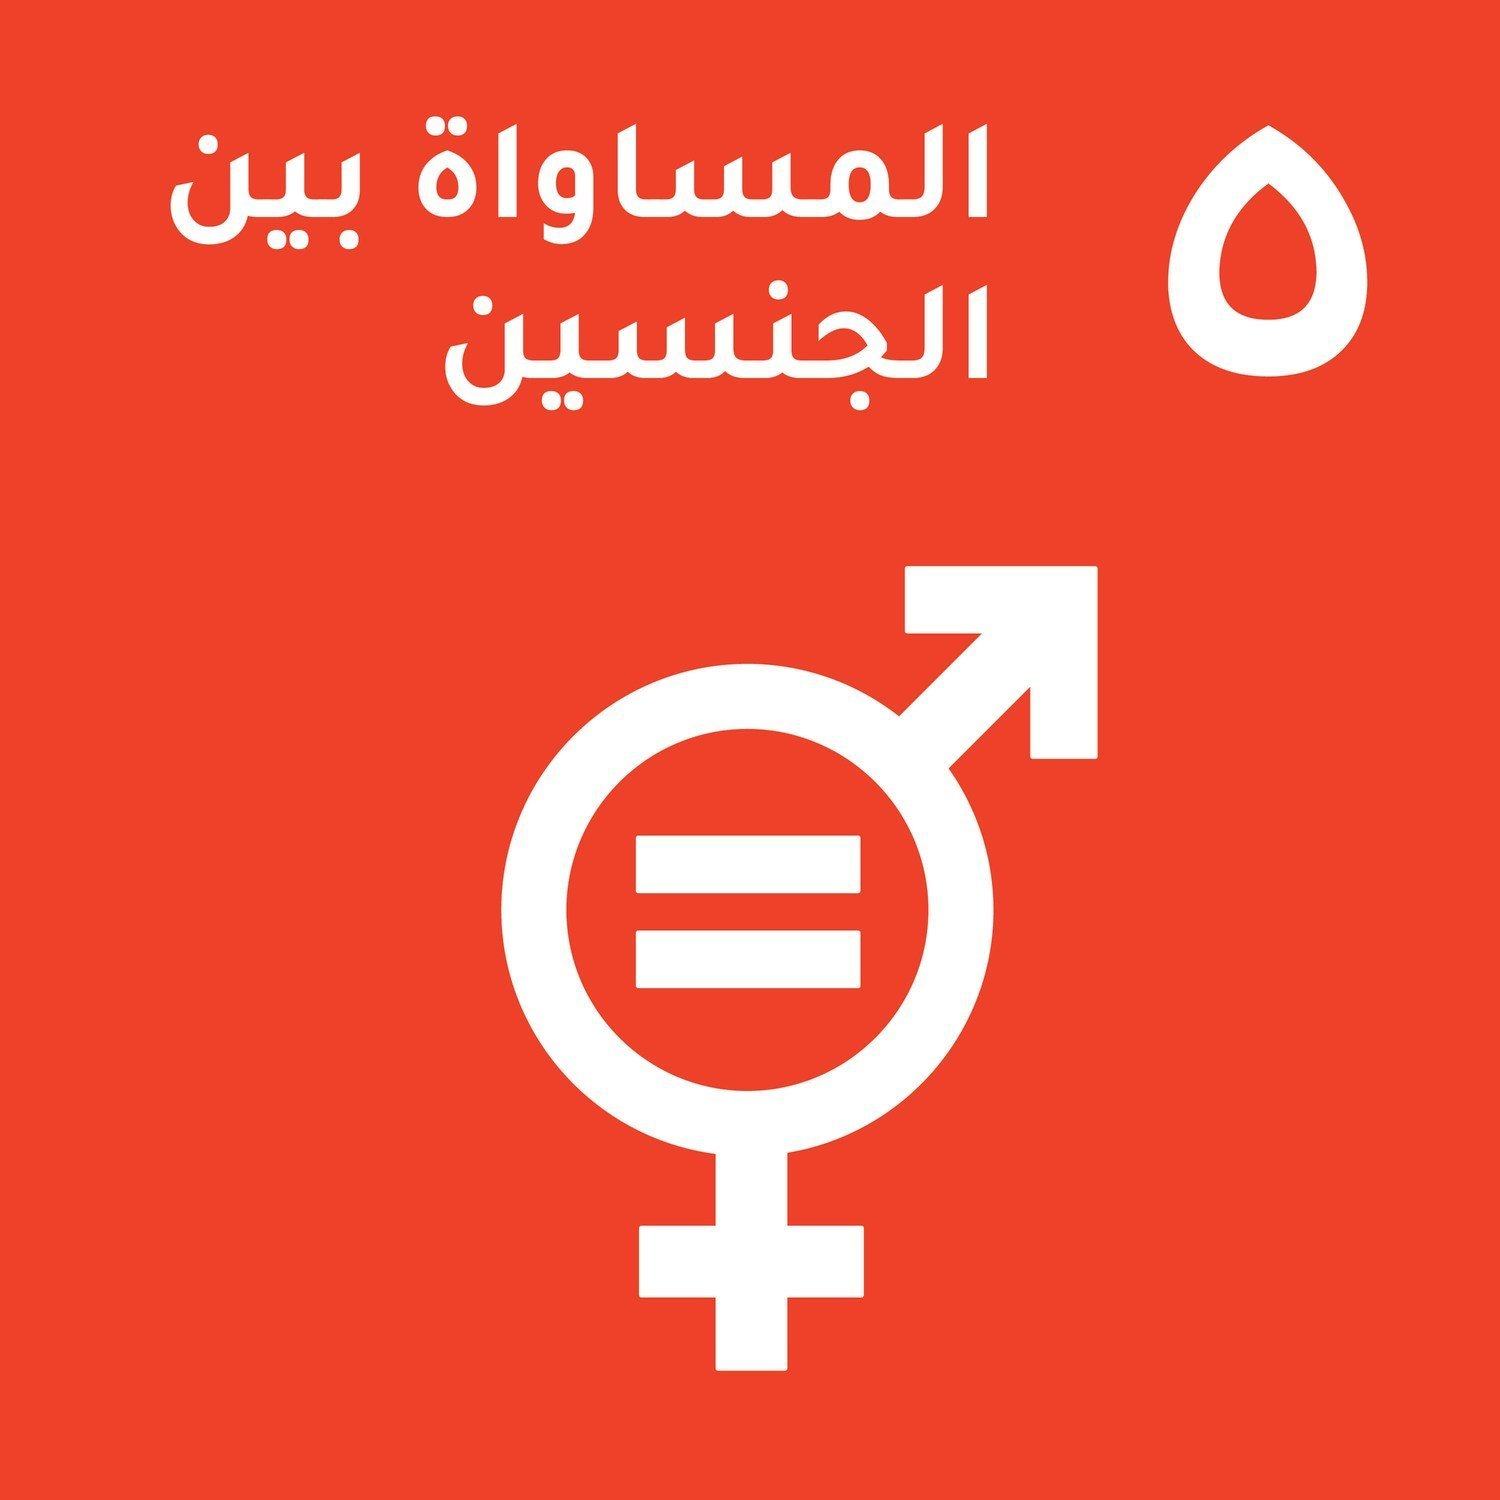 الهدف 5 - المساواة بين الجنسين